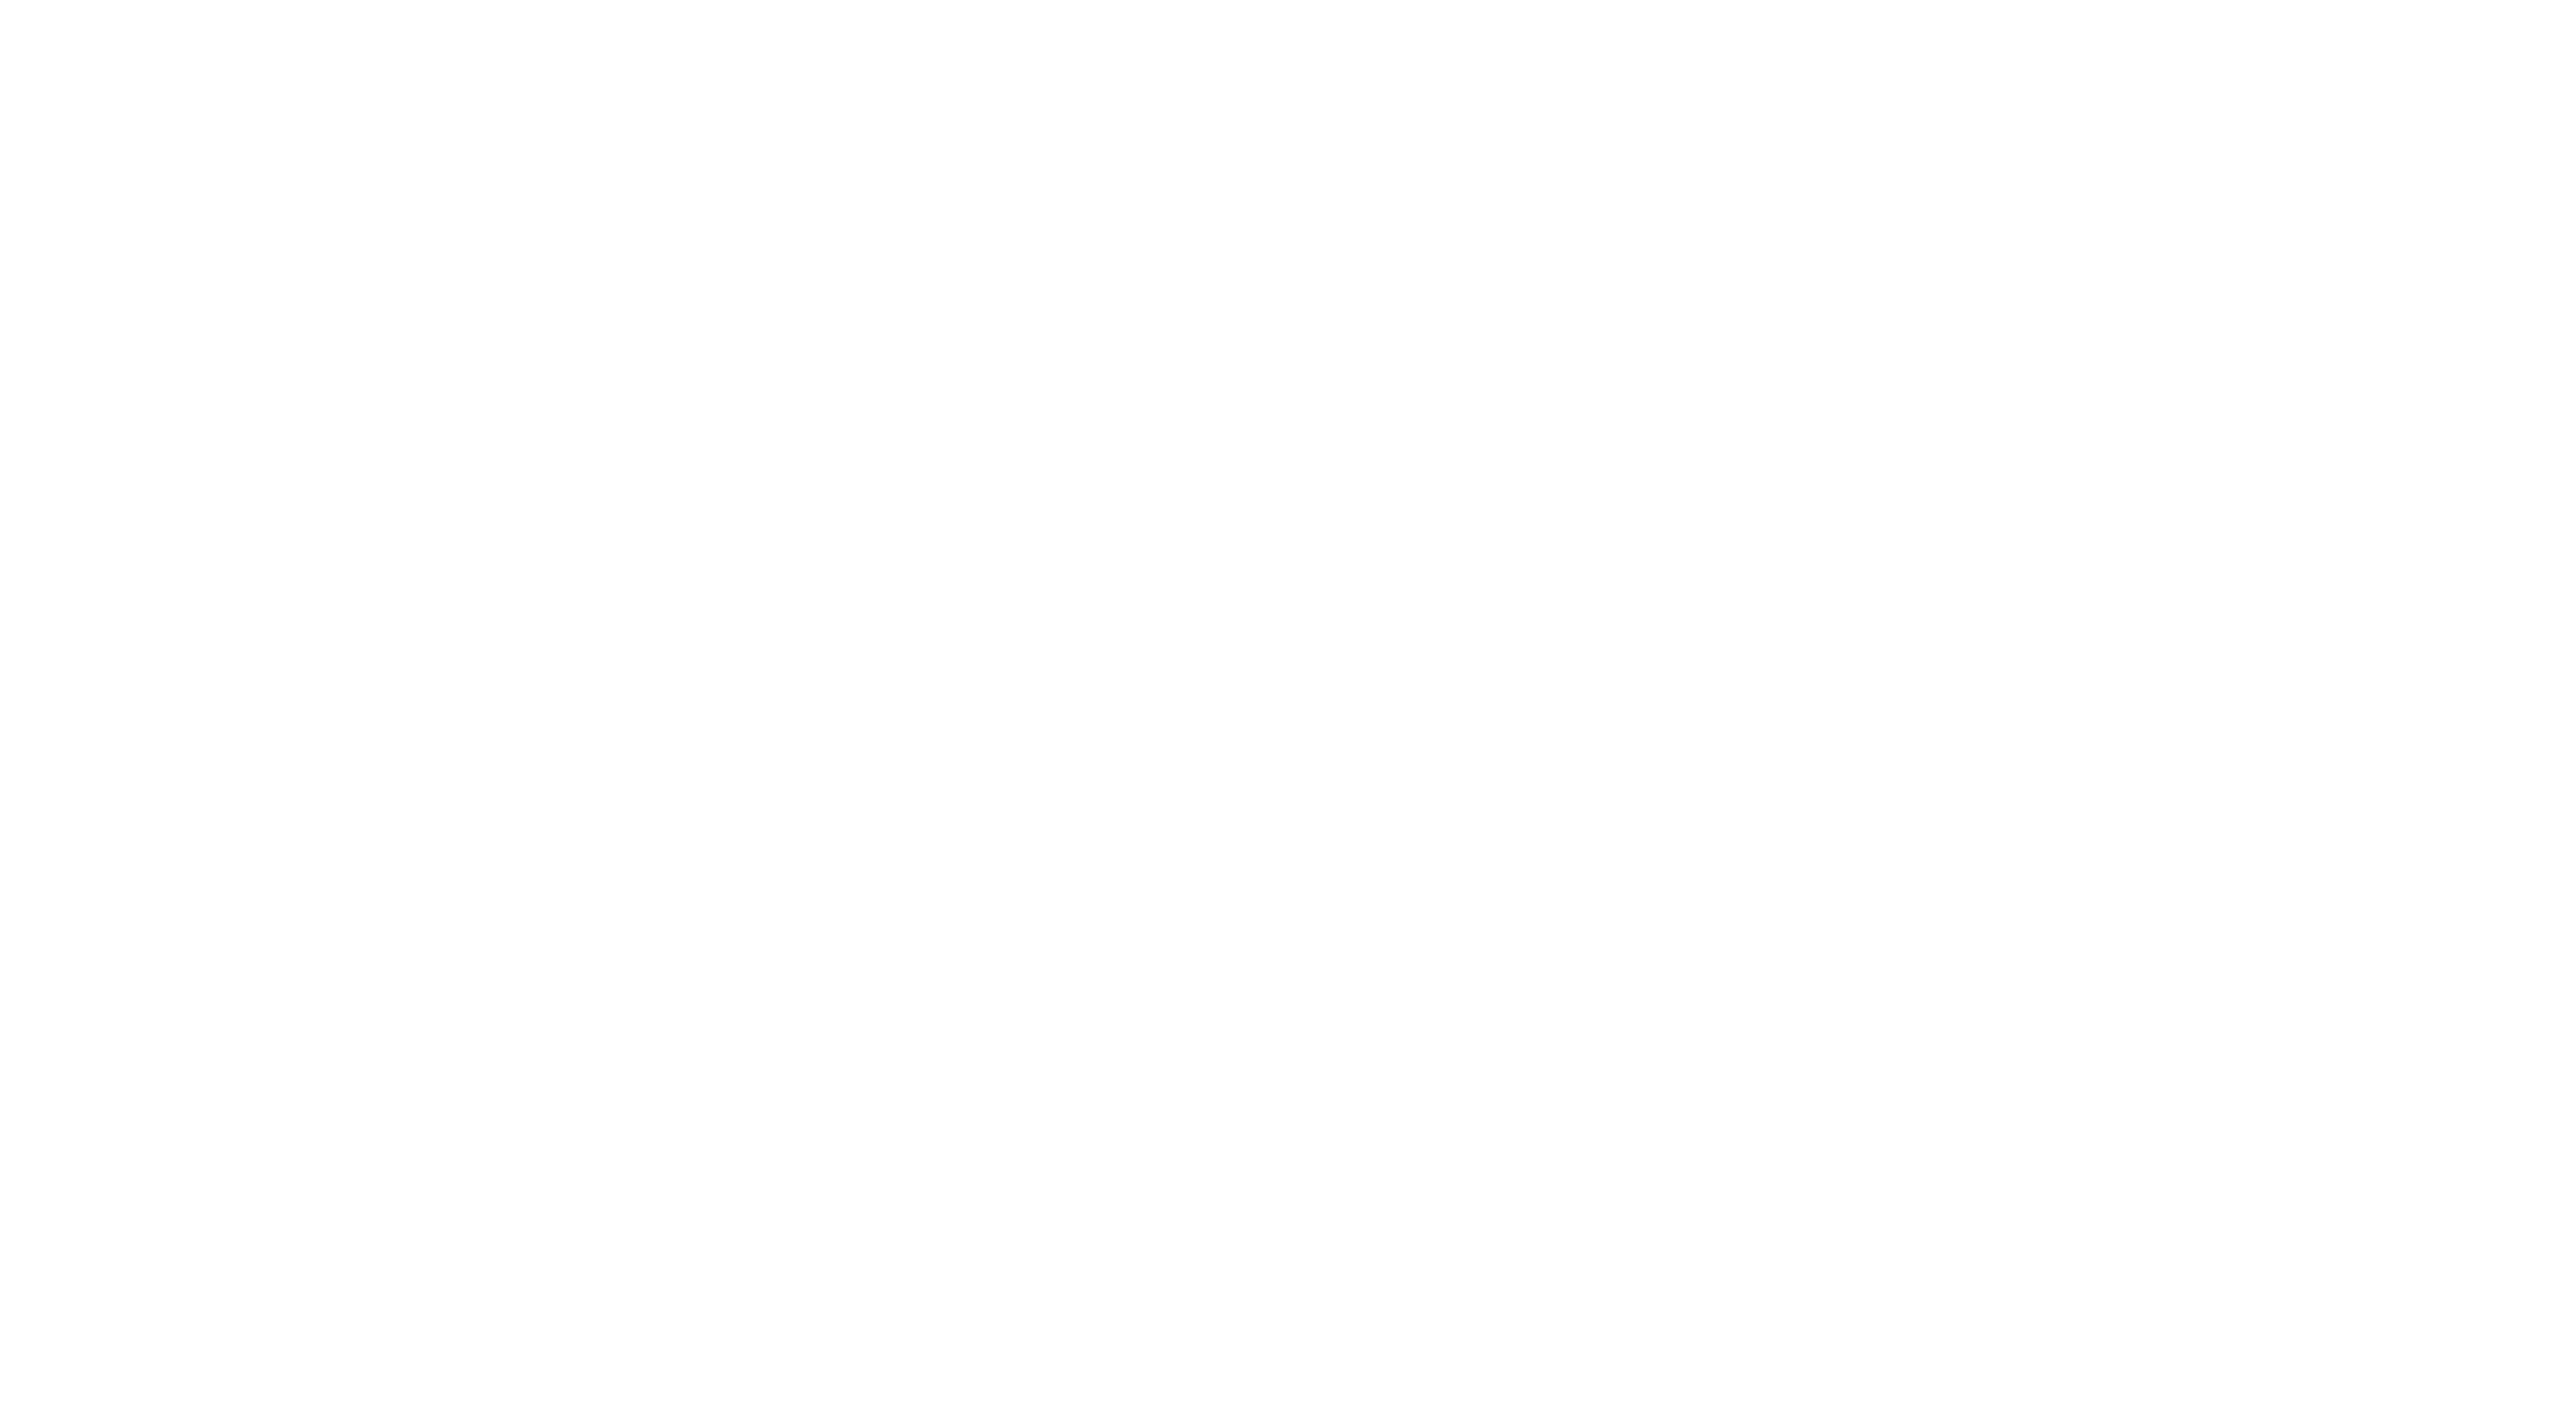 LeinieLodge - LogoWhite